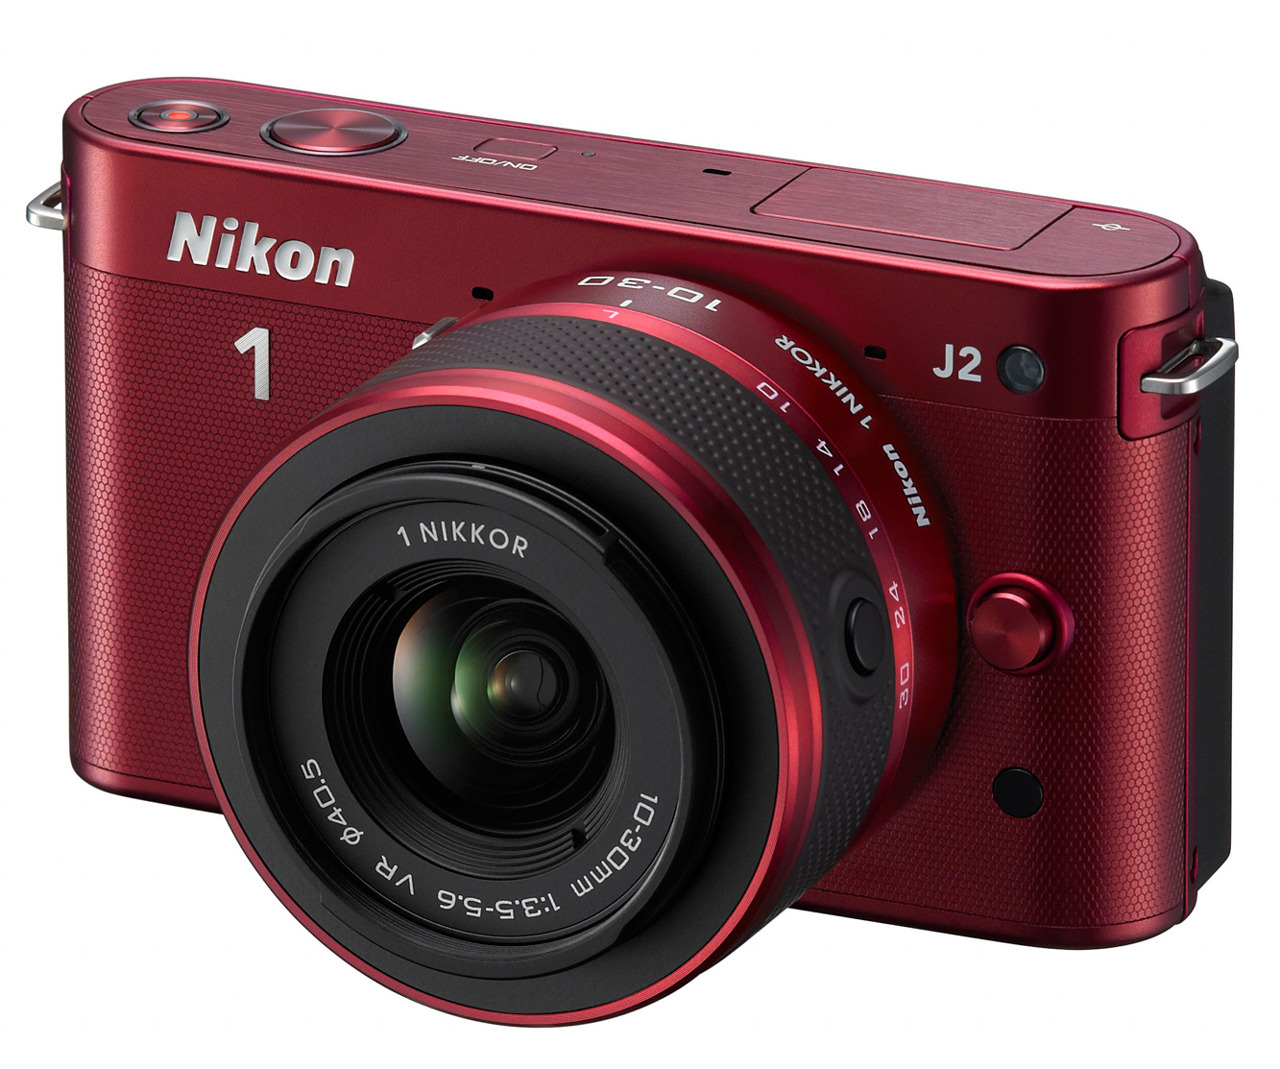 ニコン、6色展開のミラーレス一眼「Nikon 1 J2」……2.5倍交換